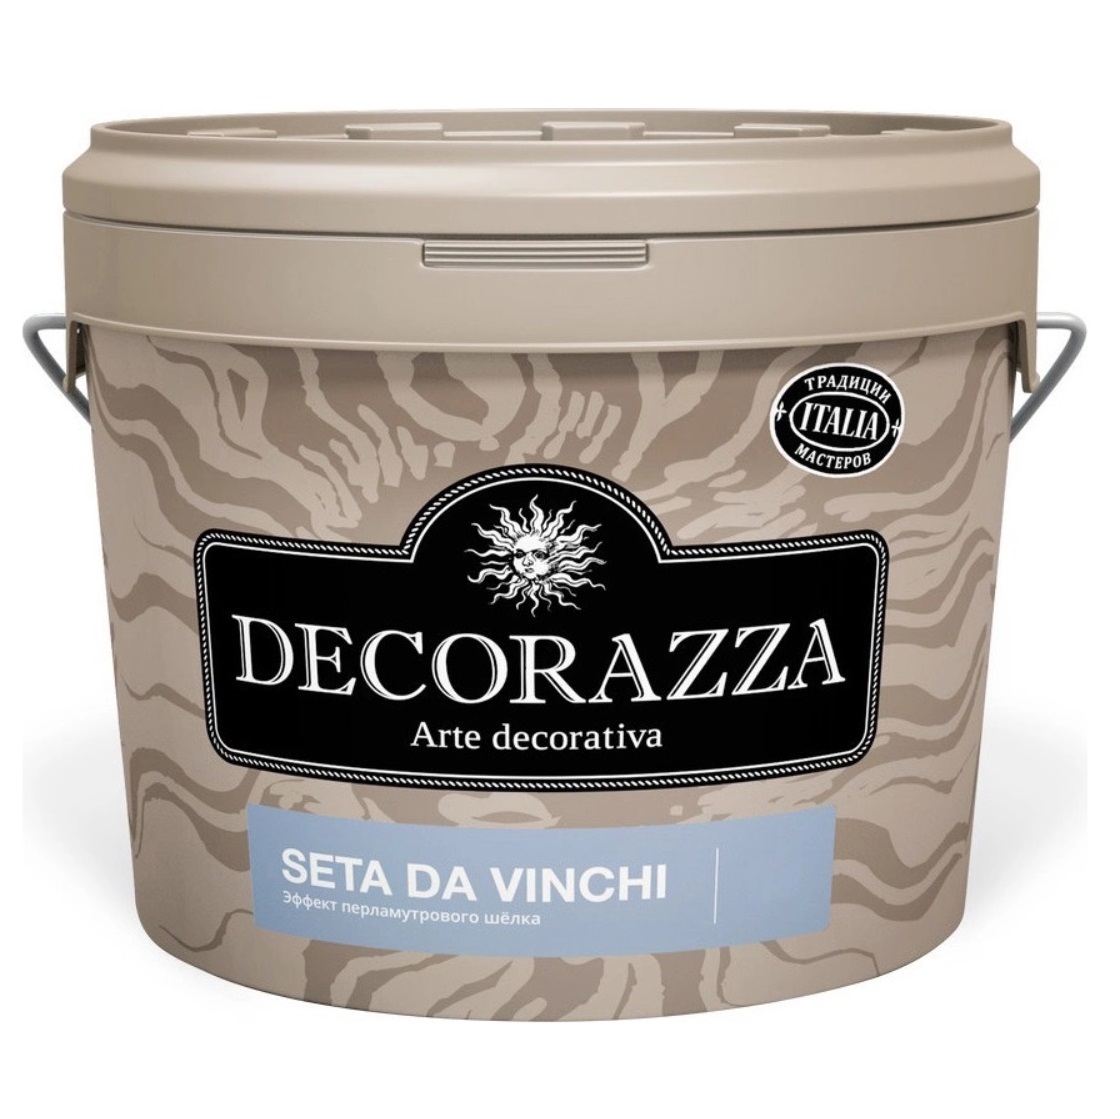 Где купить Декоративное покрытие с  более выраженным эффектом перламутрового шёлка Decorazza dz seta da vinci sd 001. 1 к Decorazza 